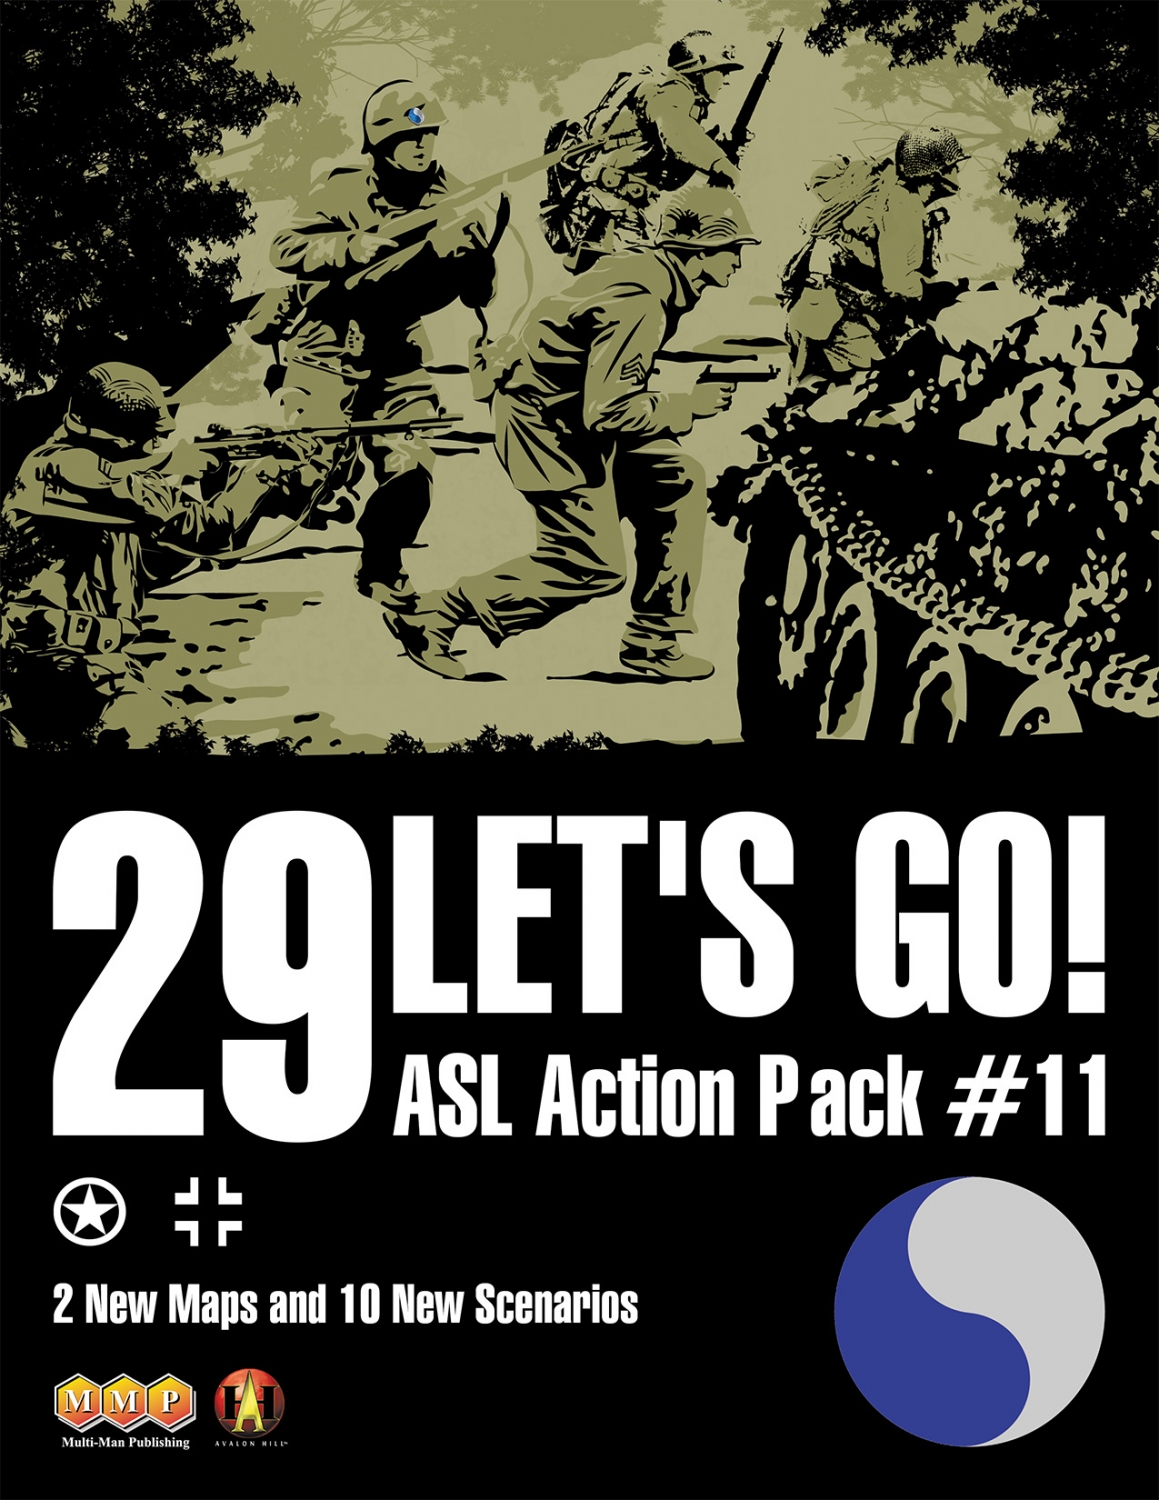 ASL Action Pack #11 - 29 Let's Go!